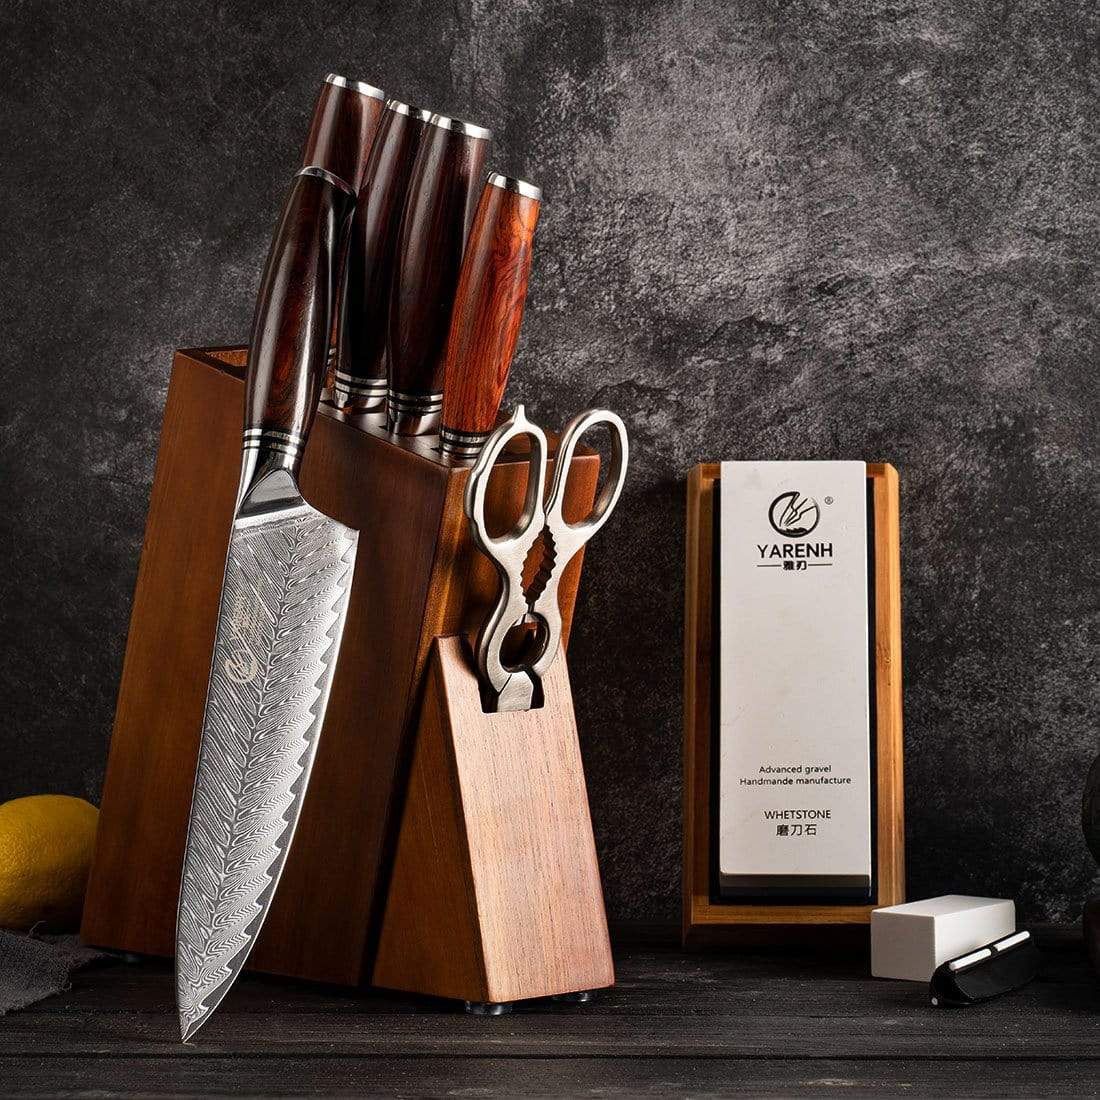 Damascus Kitchen Chef Knife Set 8 Piece-FYW Series